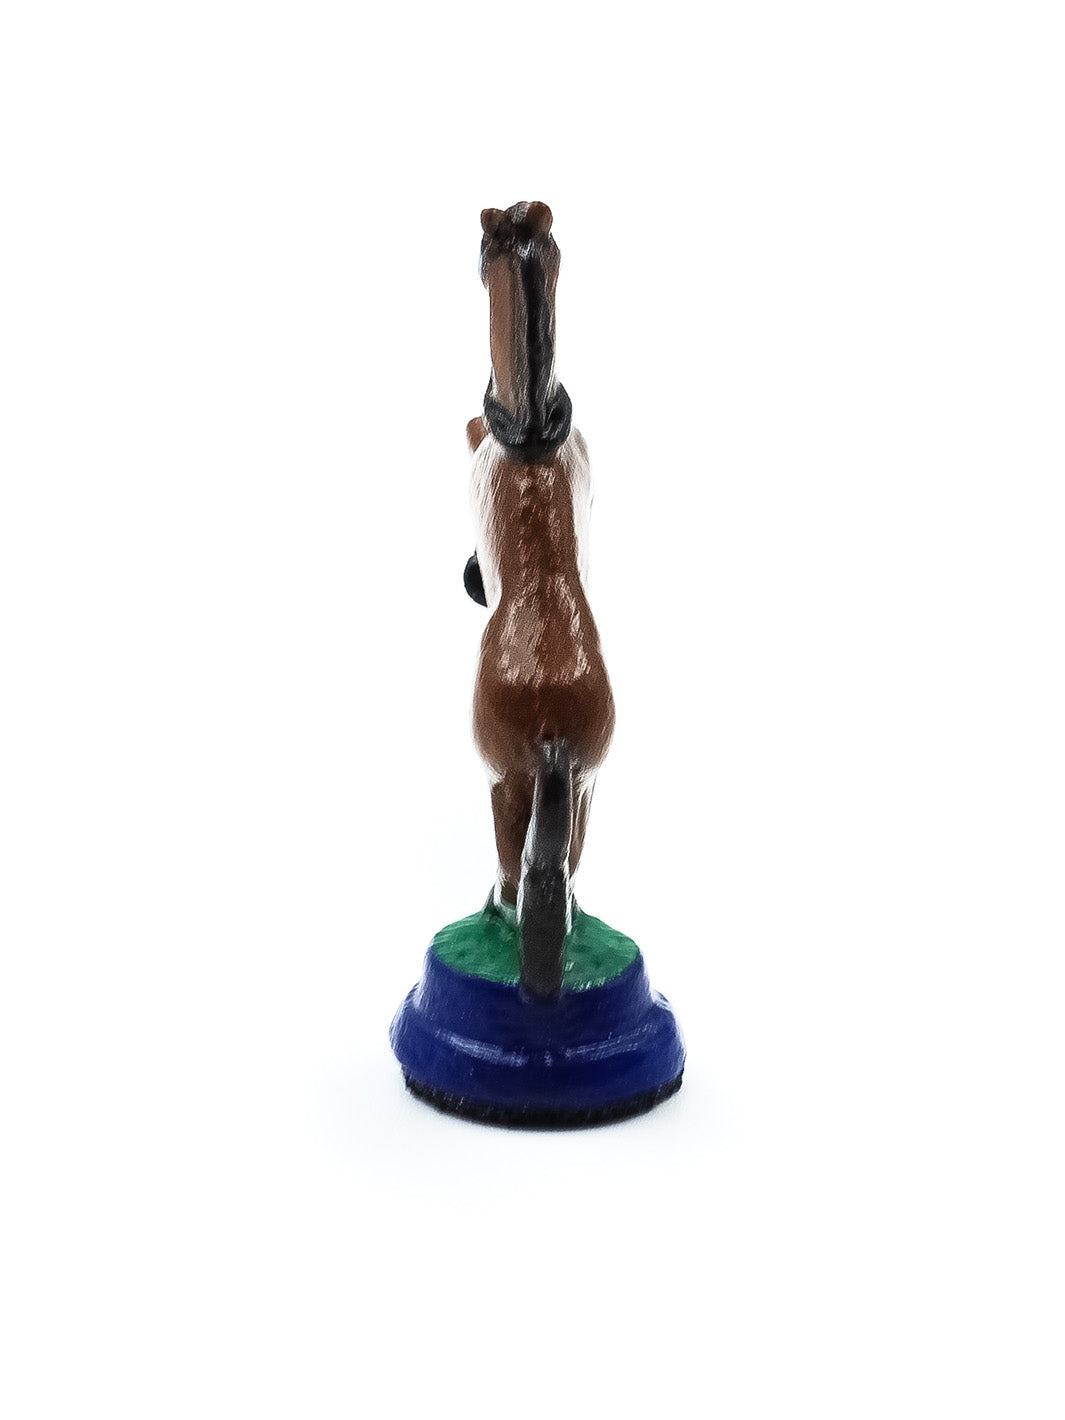 Piece Cavalier 1 en forme de cheval brun levé sur ses pattes arrieres vue de derriere